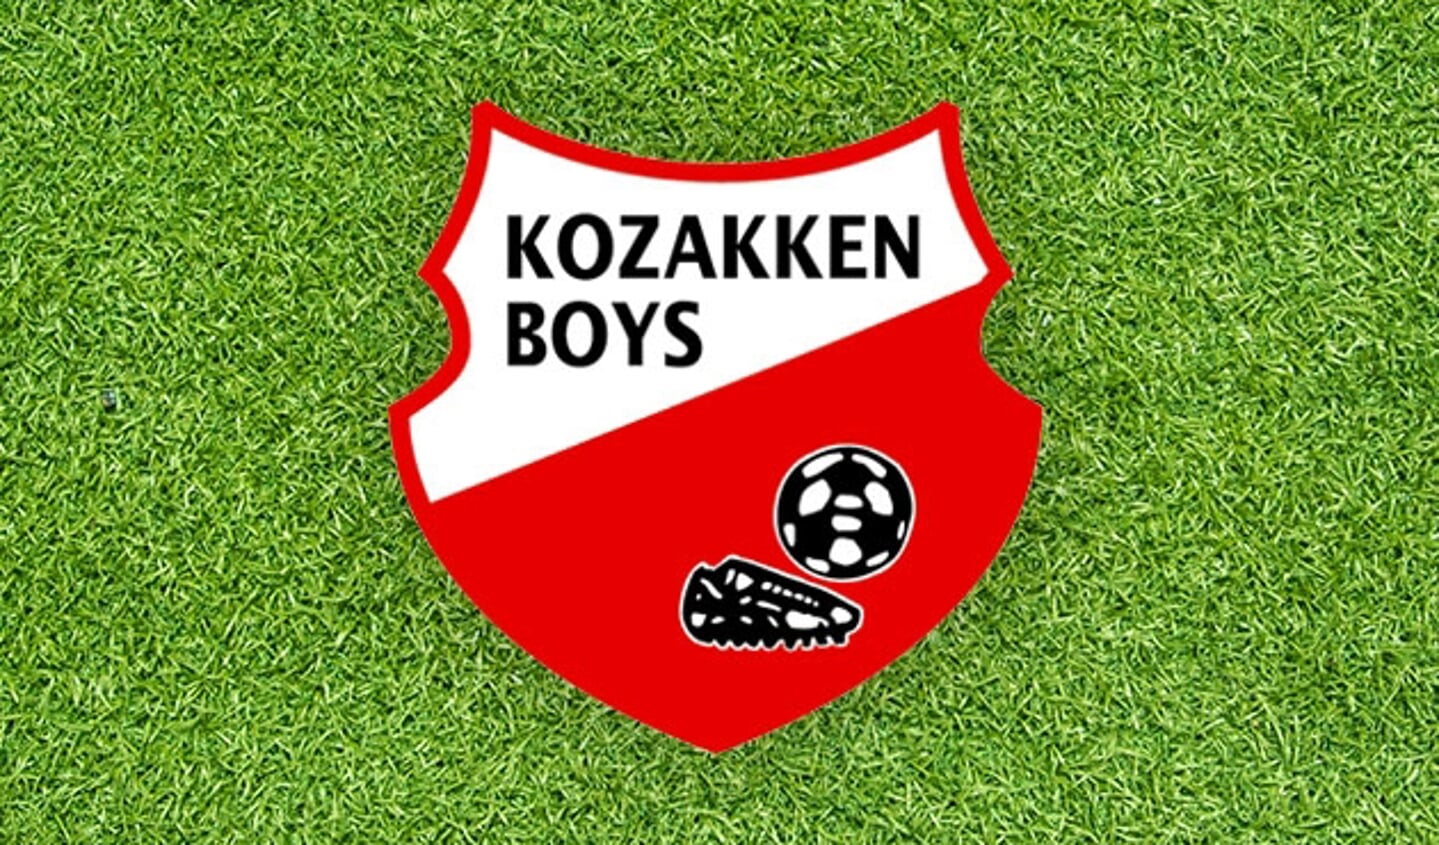 verbannen Kantine Bewijzen Kozakken Boys huurt Timo Regouin van FC Den Bosch, Sven van Ingen tekent  voor een jaar bij - Voetbalnieuws uit de regio, altijd actueel